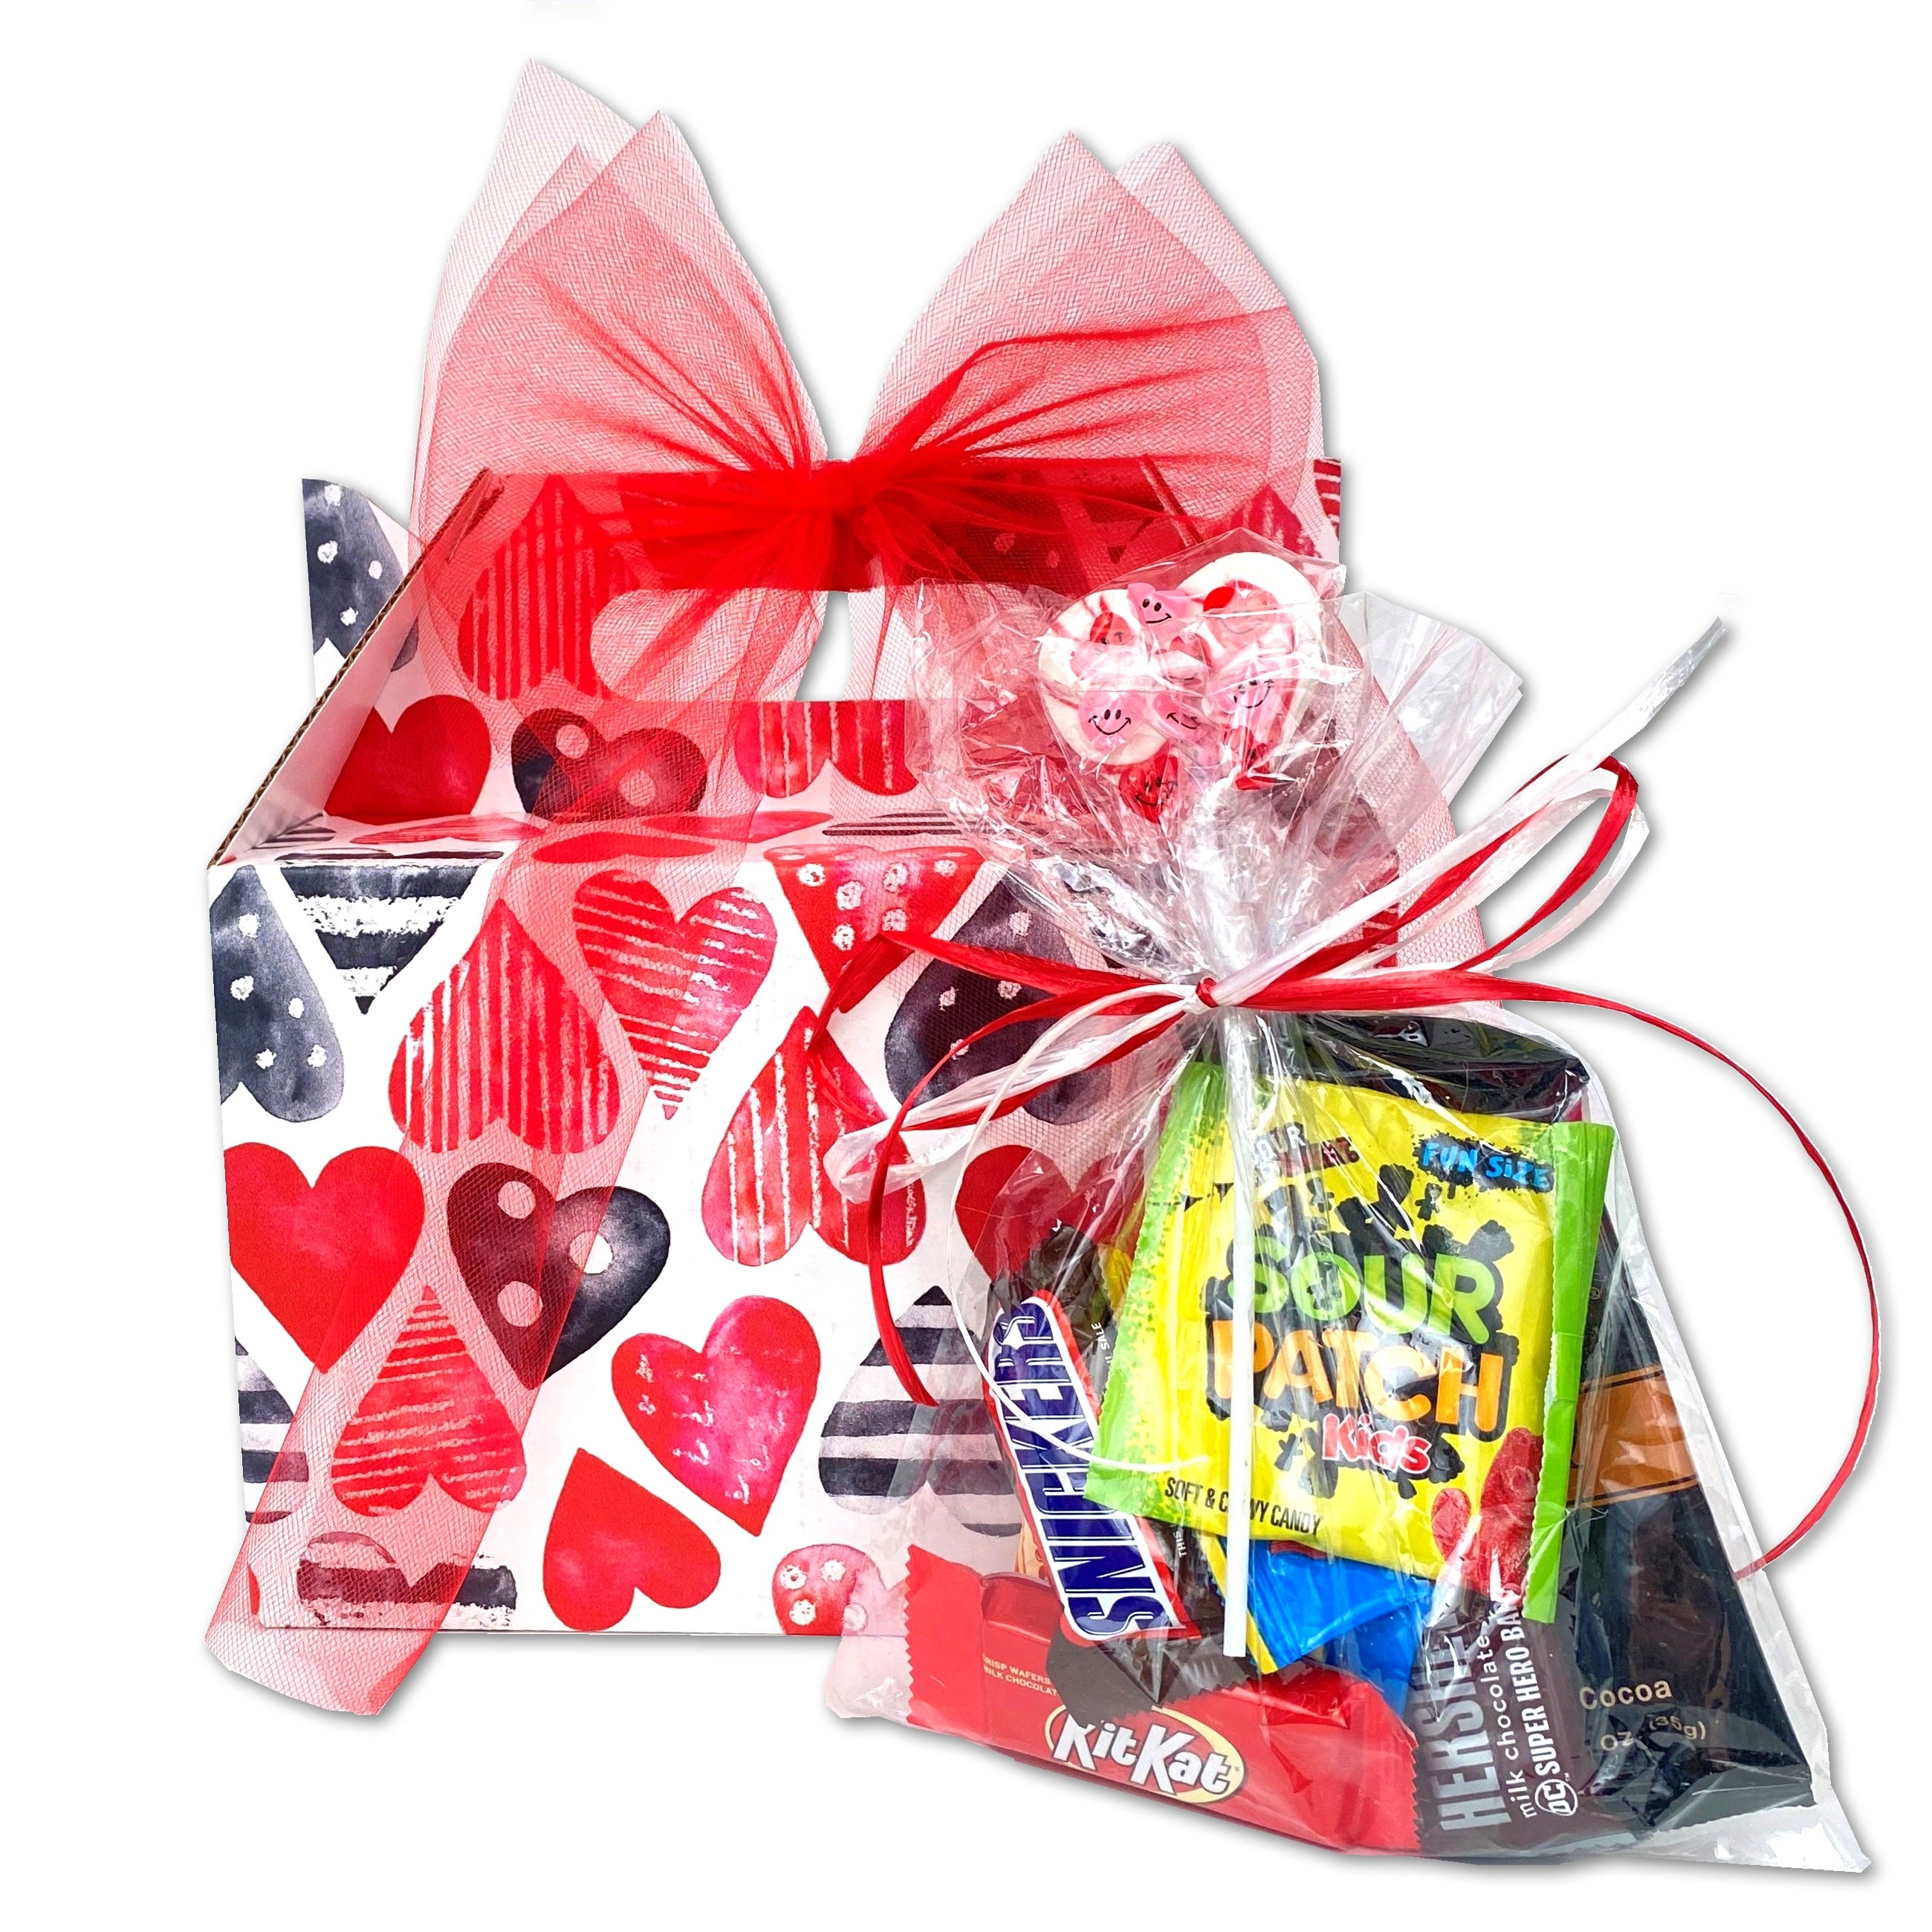 Active Fun Valentine Gift Basket